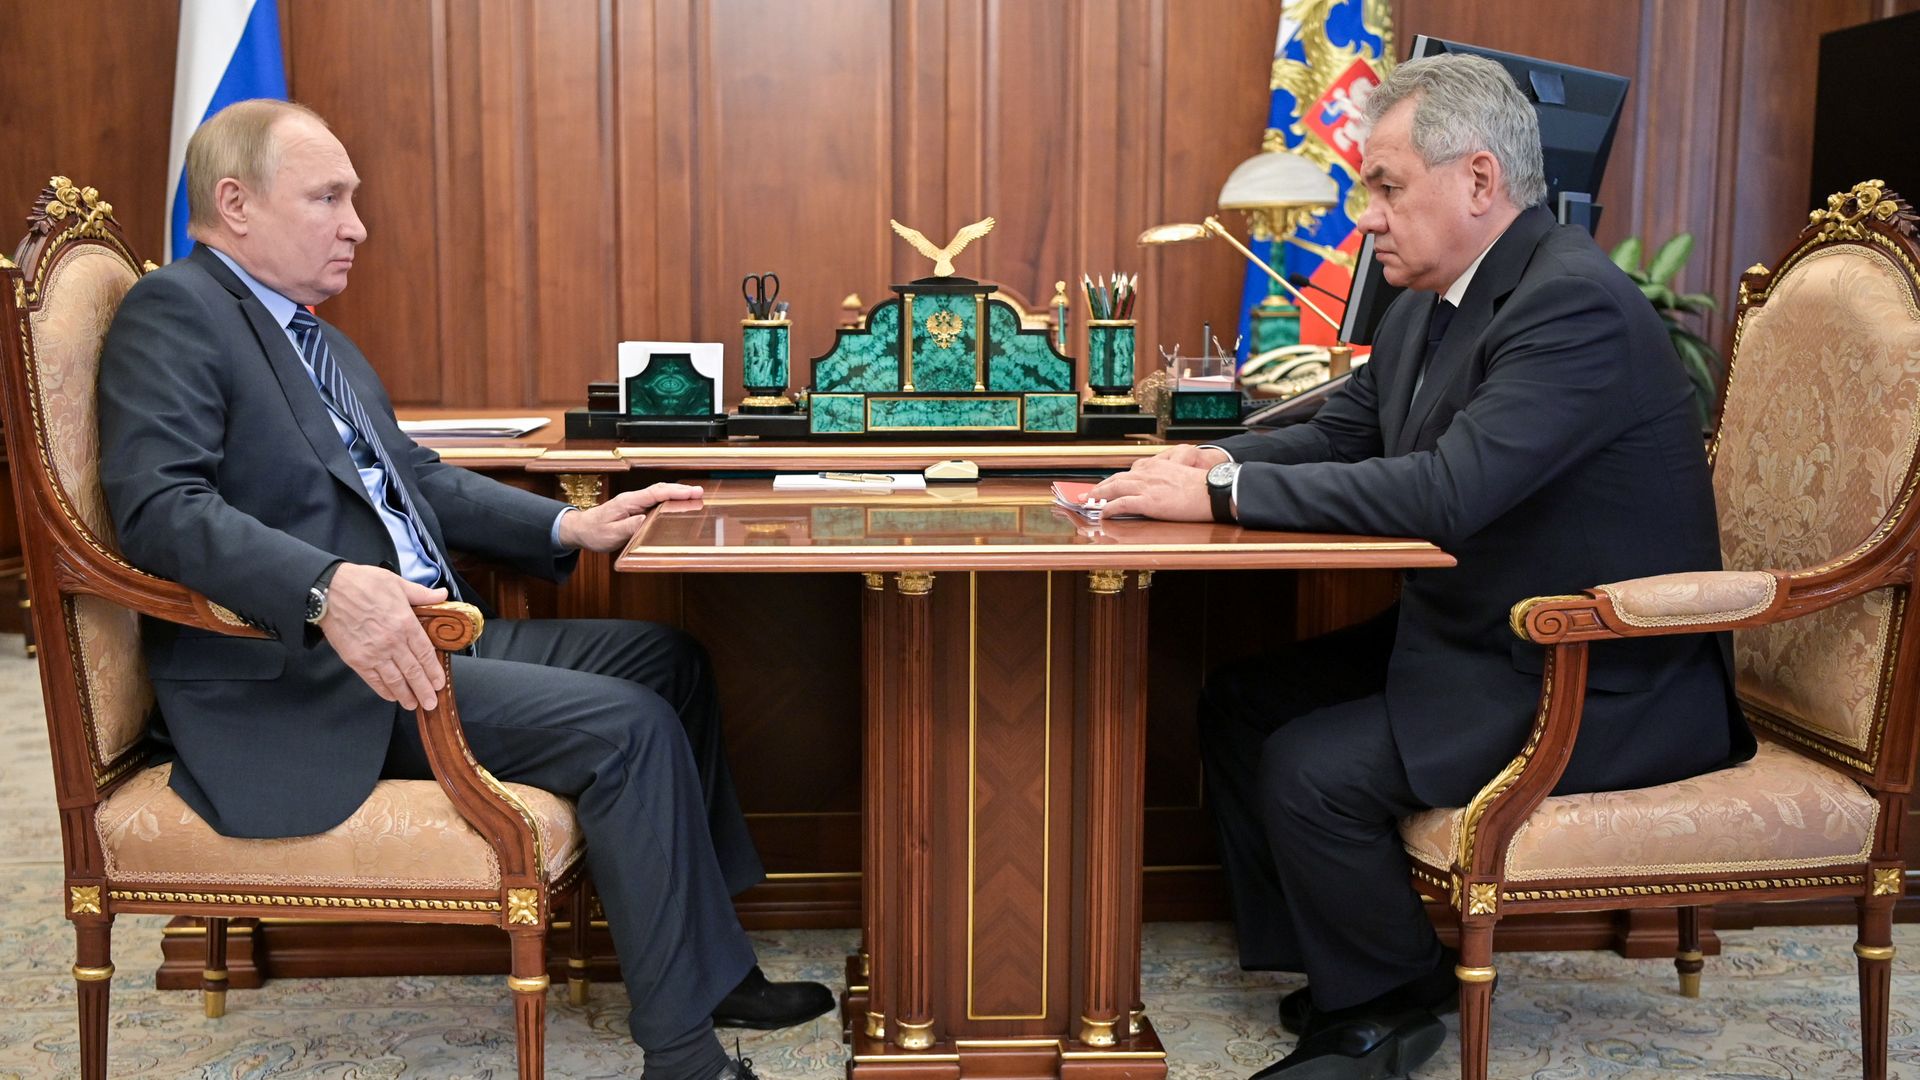 Putin and Sergei Shoygu